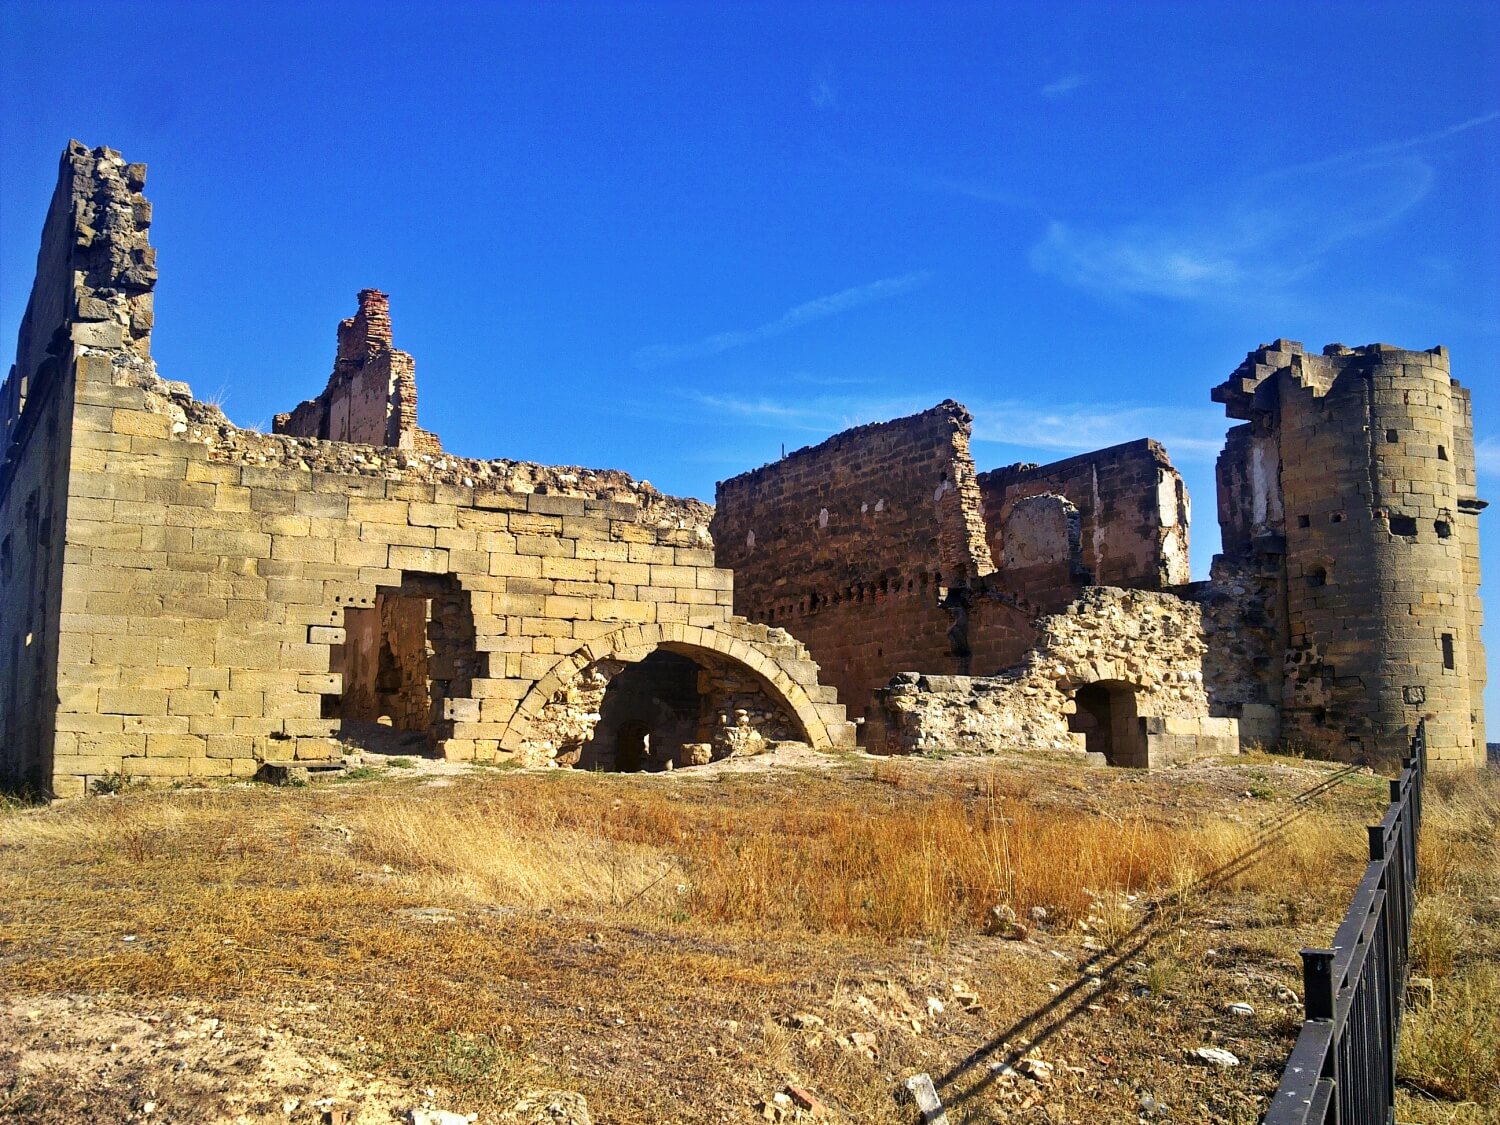 Castillo de Maella